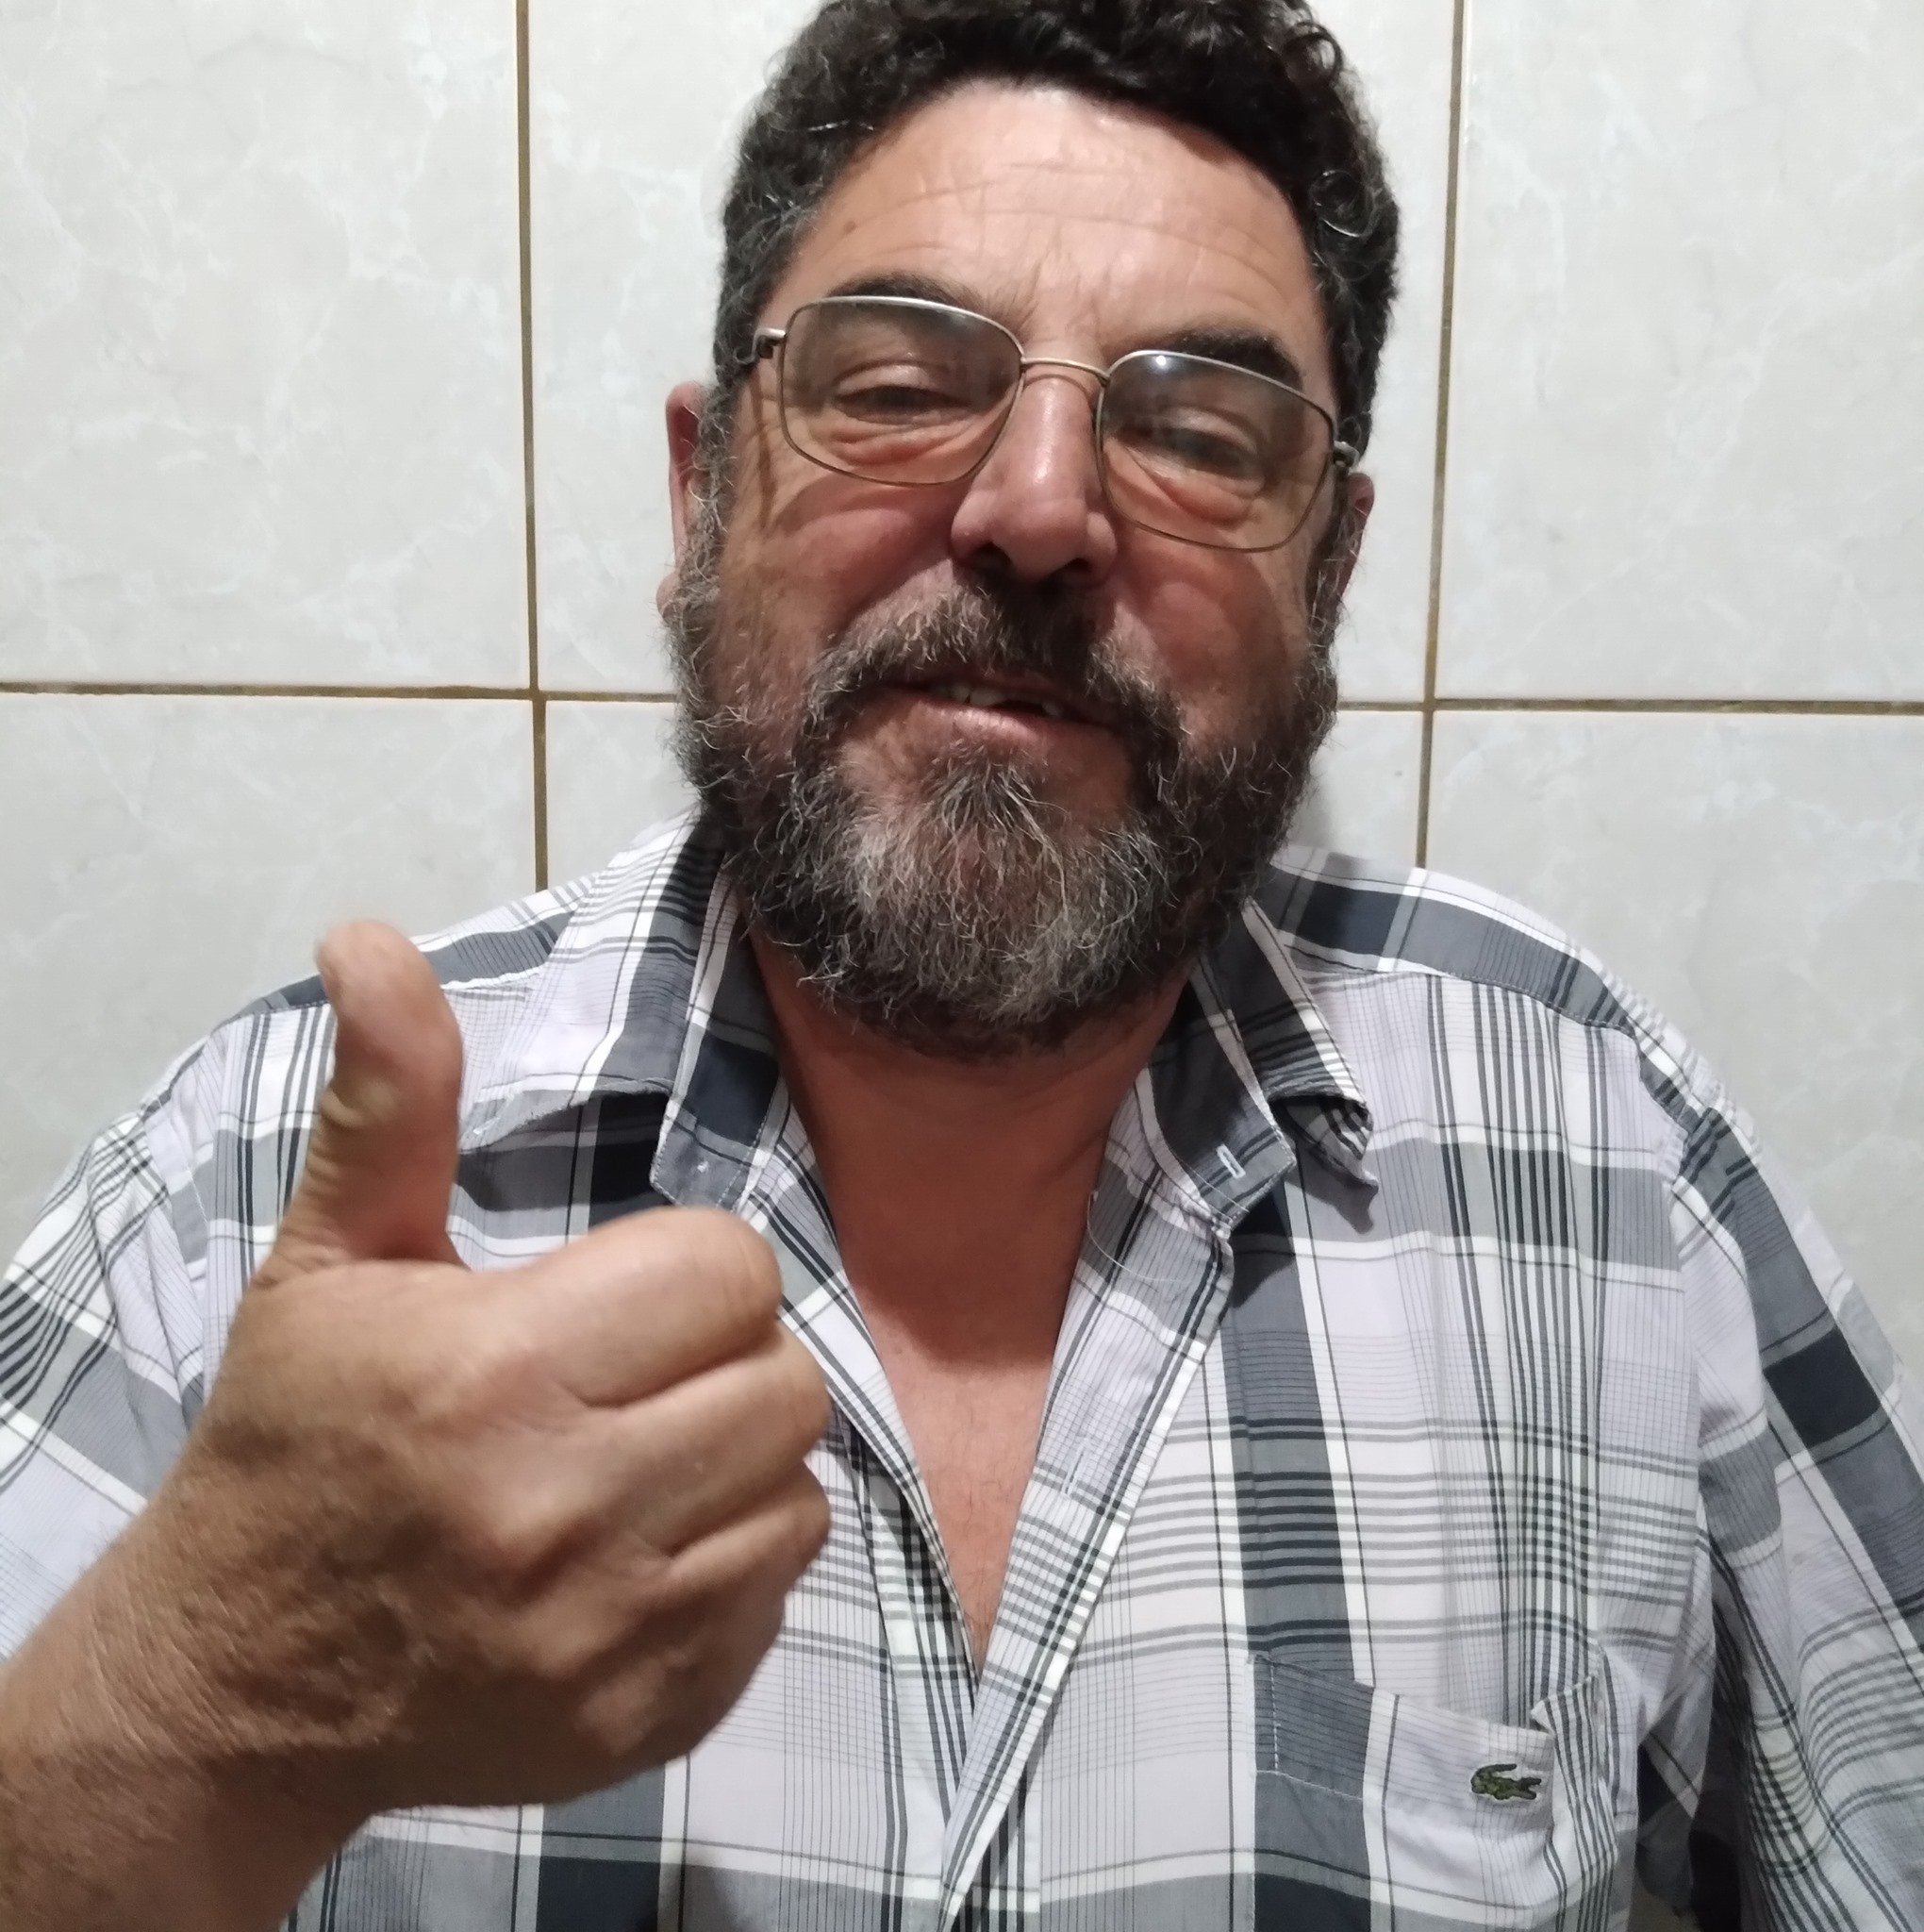 Morre o ex-vereador de Sapucaia do Sul Rubem Léo Lima Soares - Região -  Jornal NH